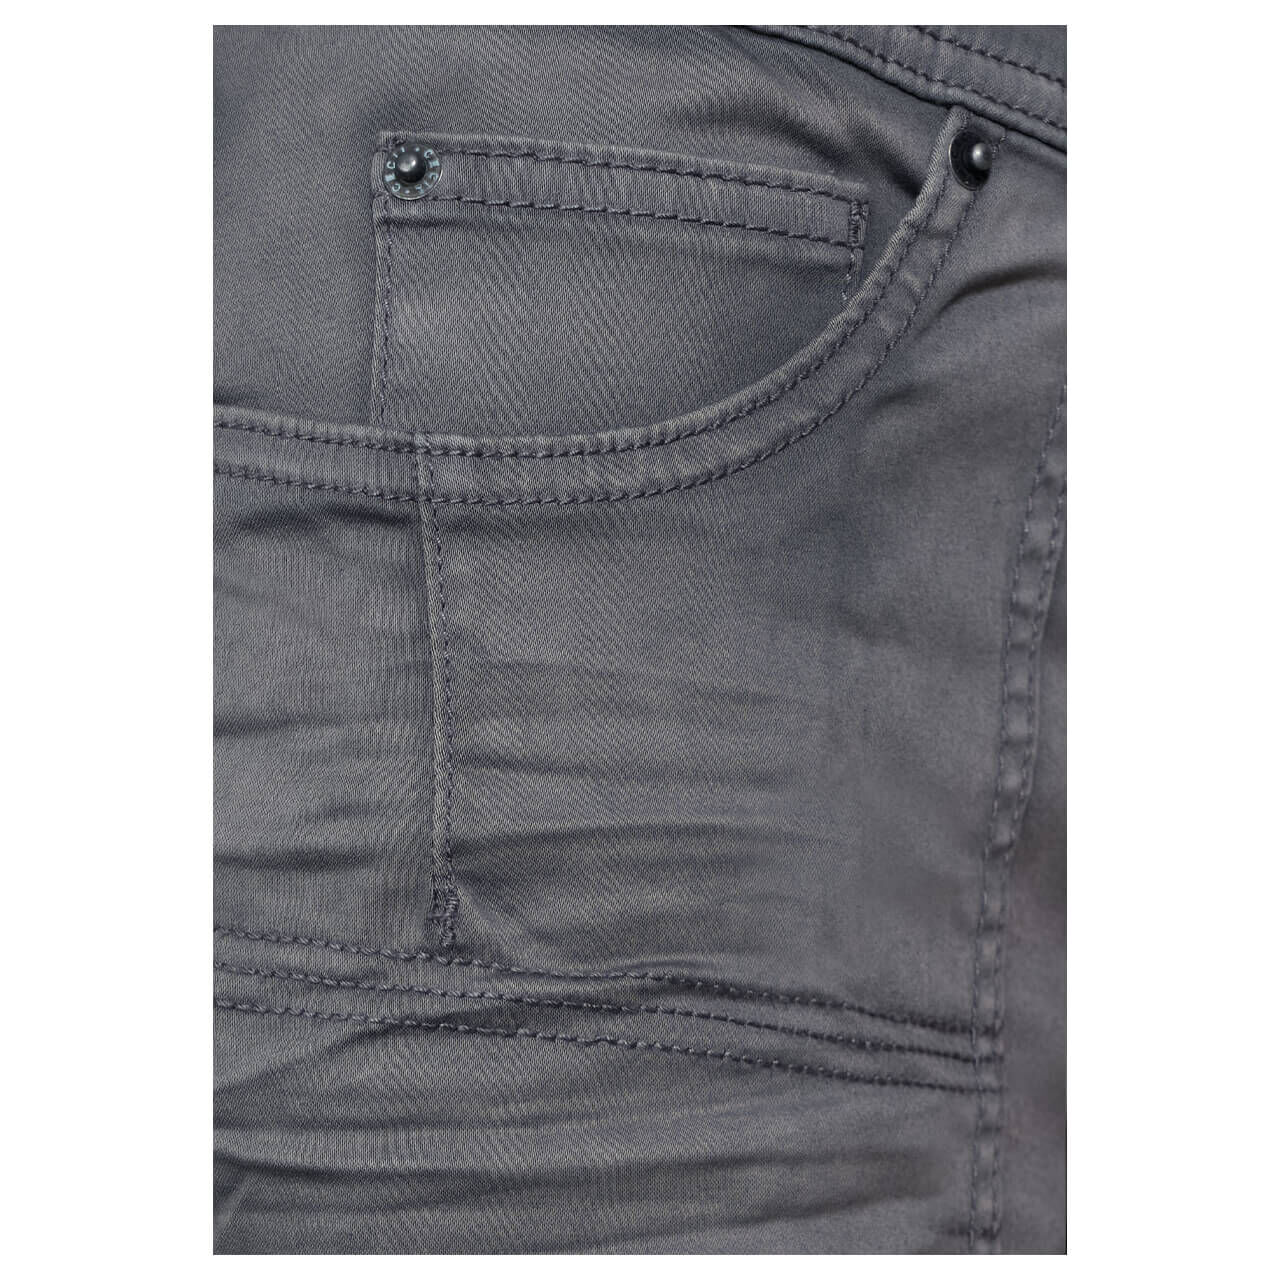 Cecil New York Baumwoll Shorts für Damen in Grau, FarbNr.: 10498